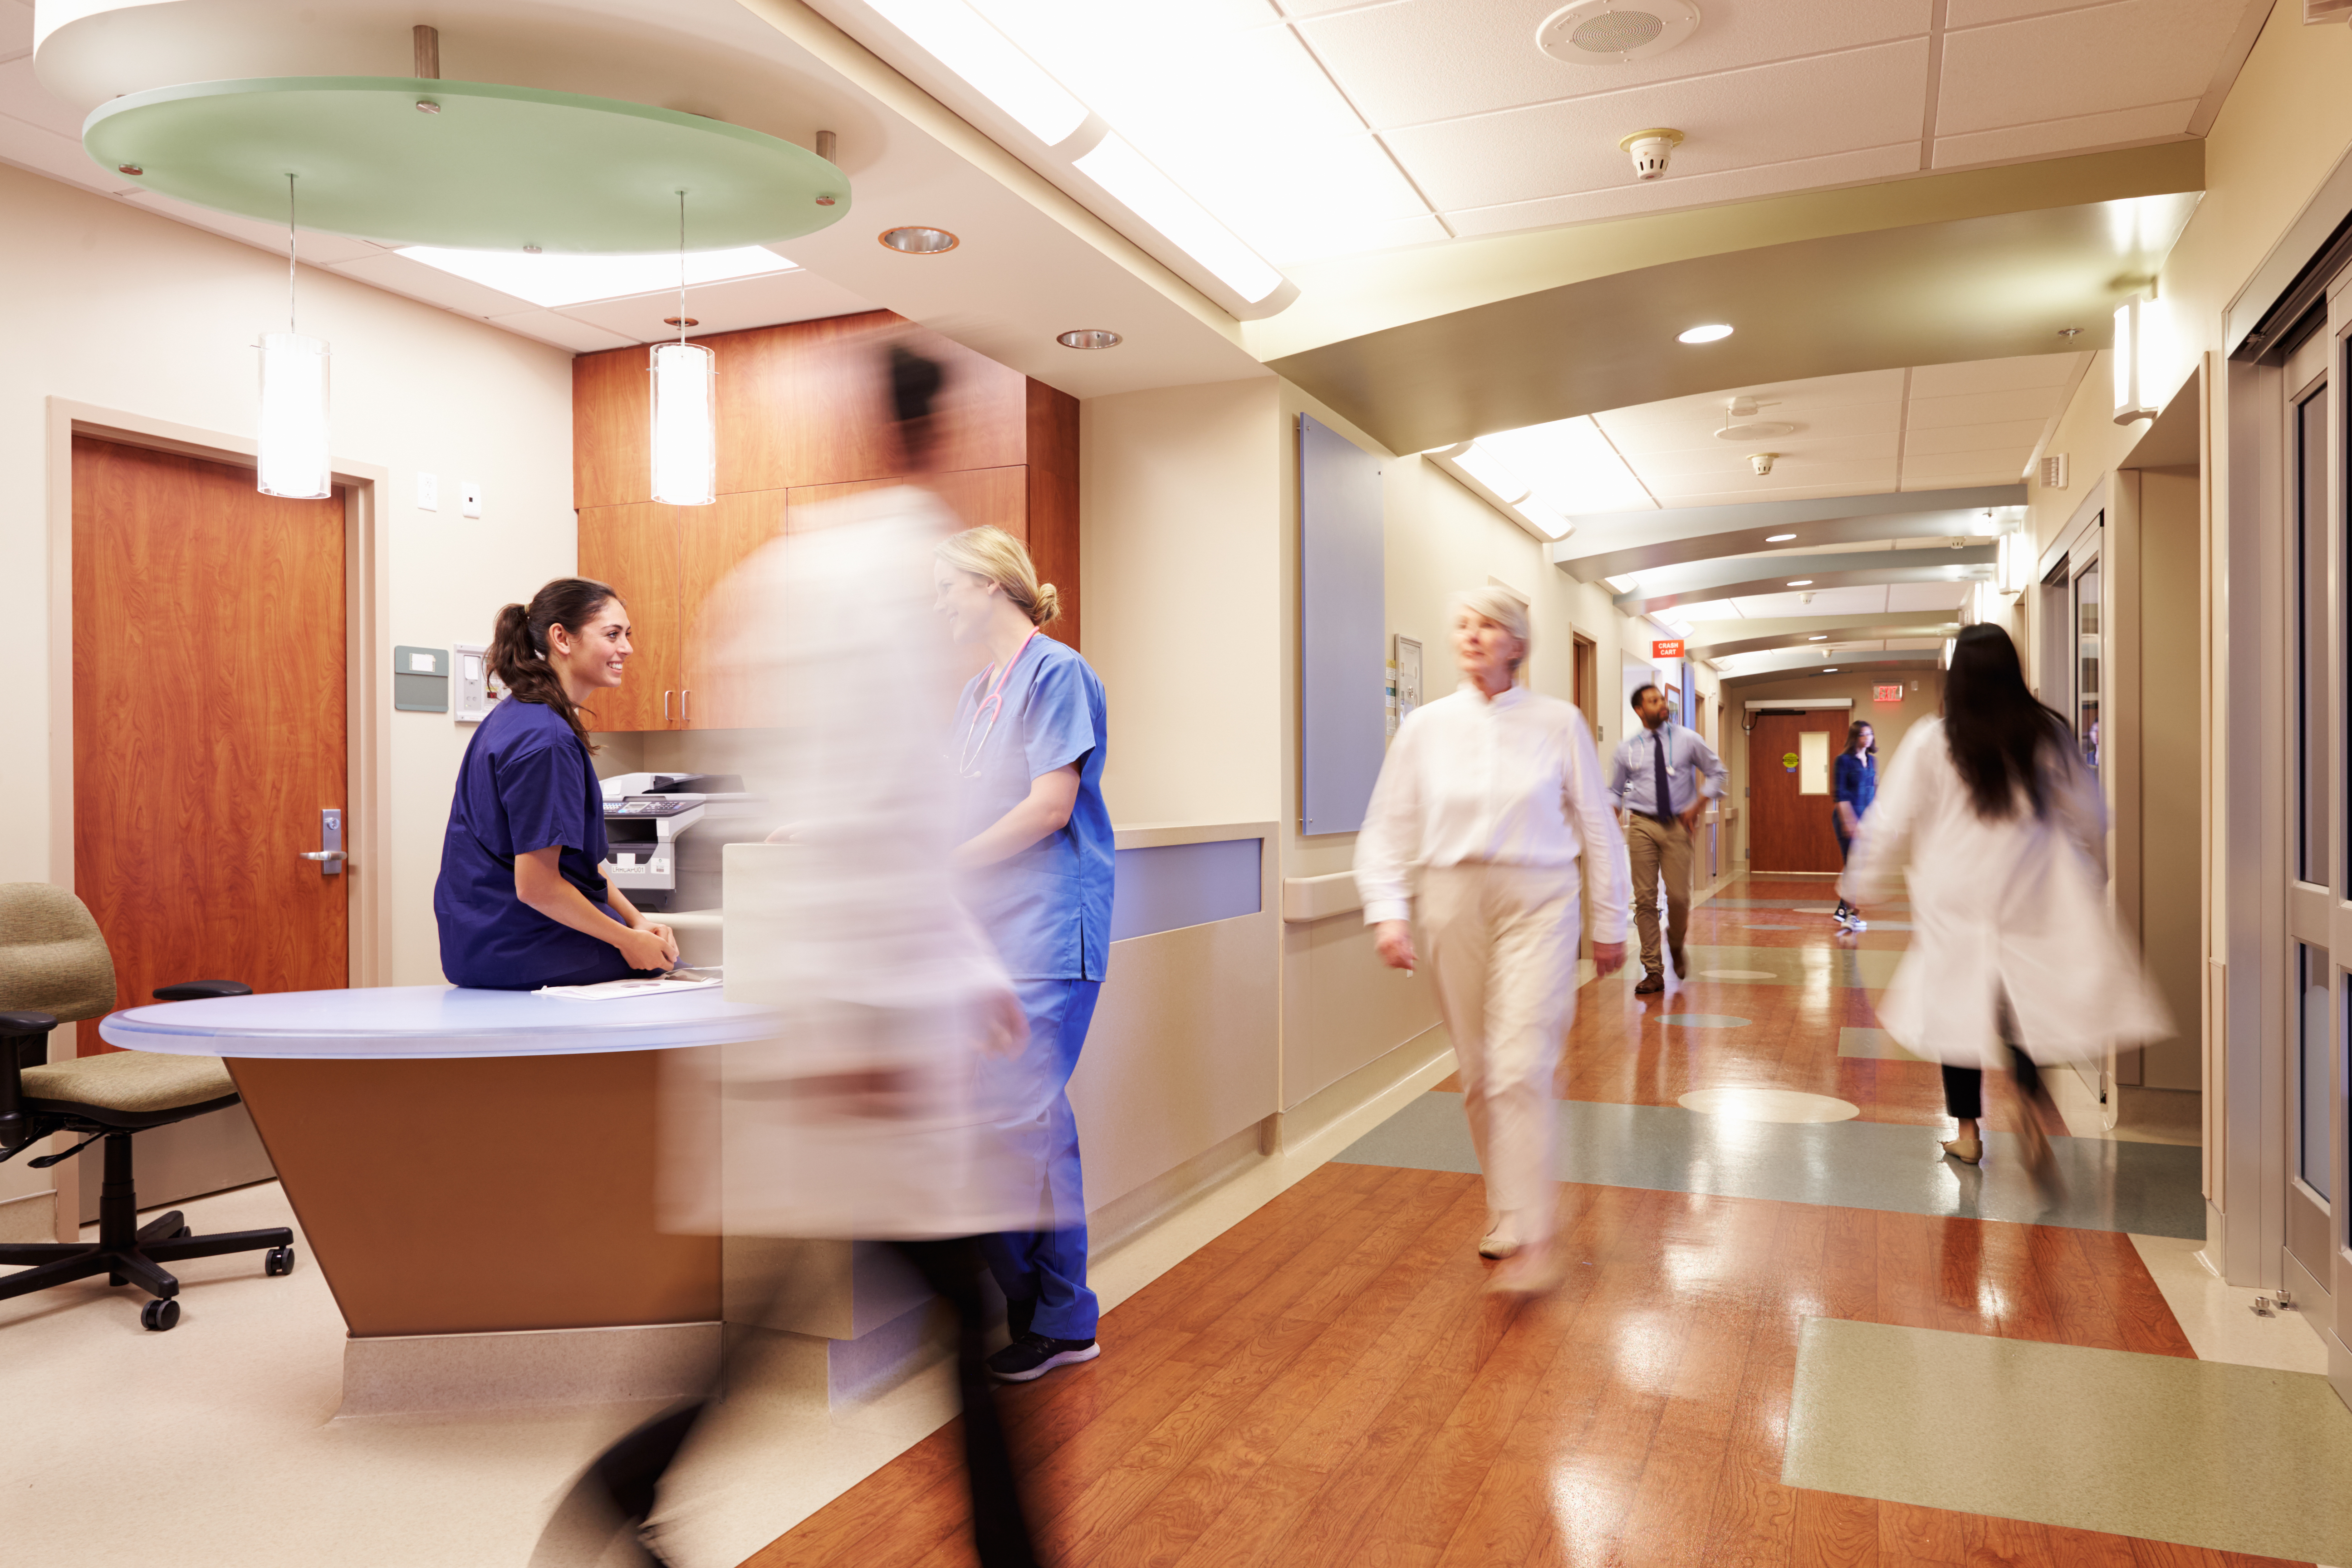 Puesto de Enfermera Ocupado en un Hospital Moderno. | Fuente: Shutterstock